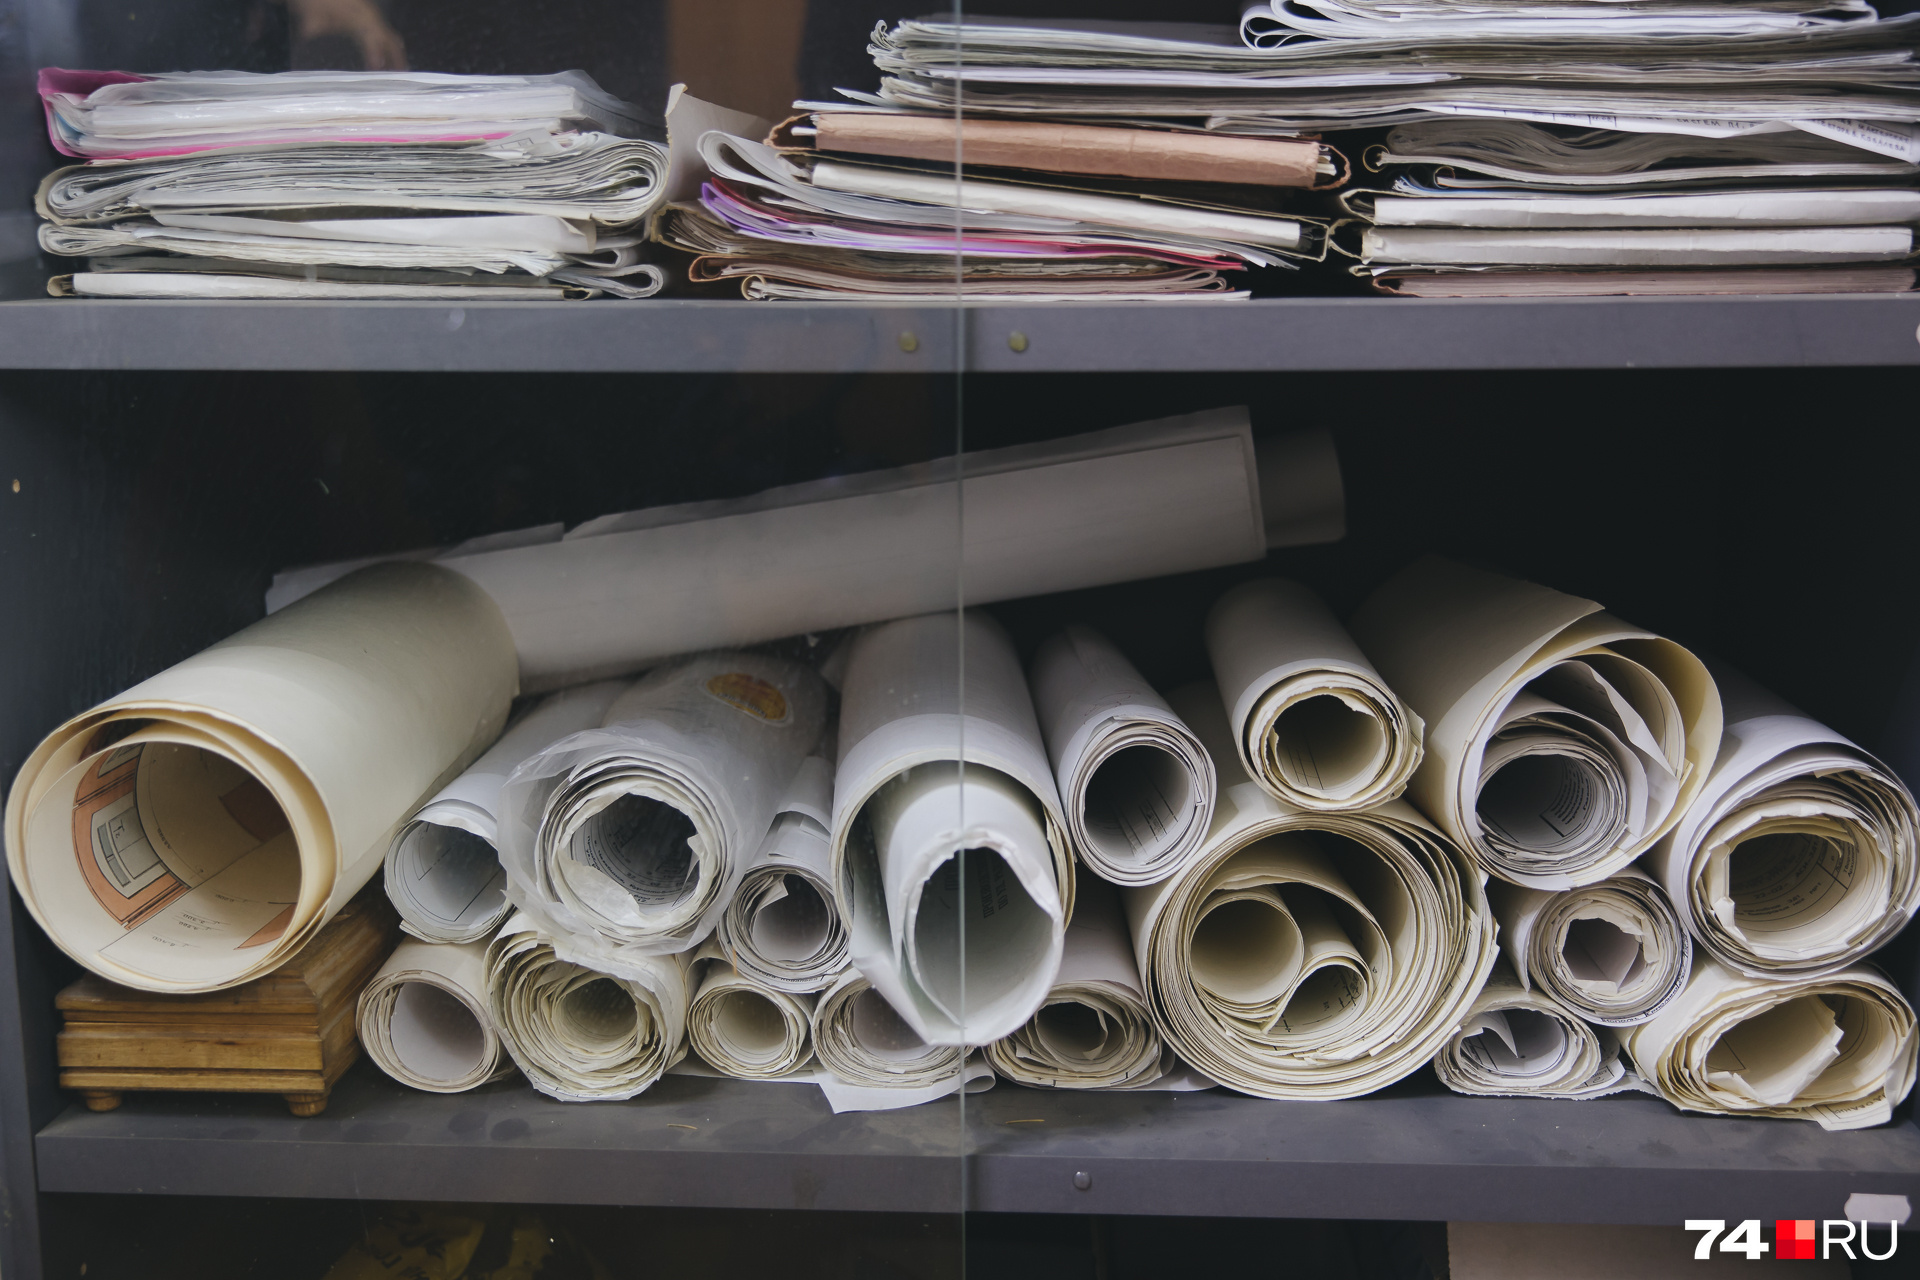 Проекты, письма, судебная документация — шкафы предпринимателя завалены бумагами